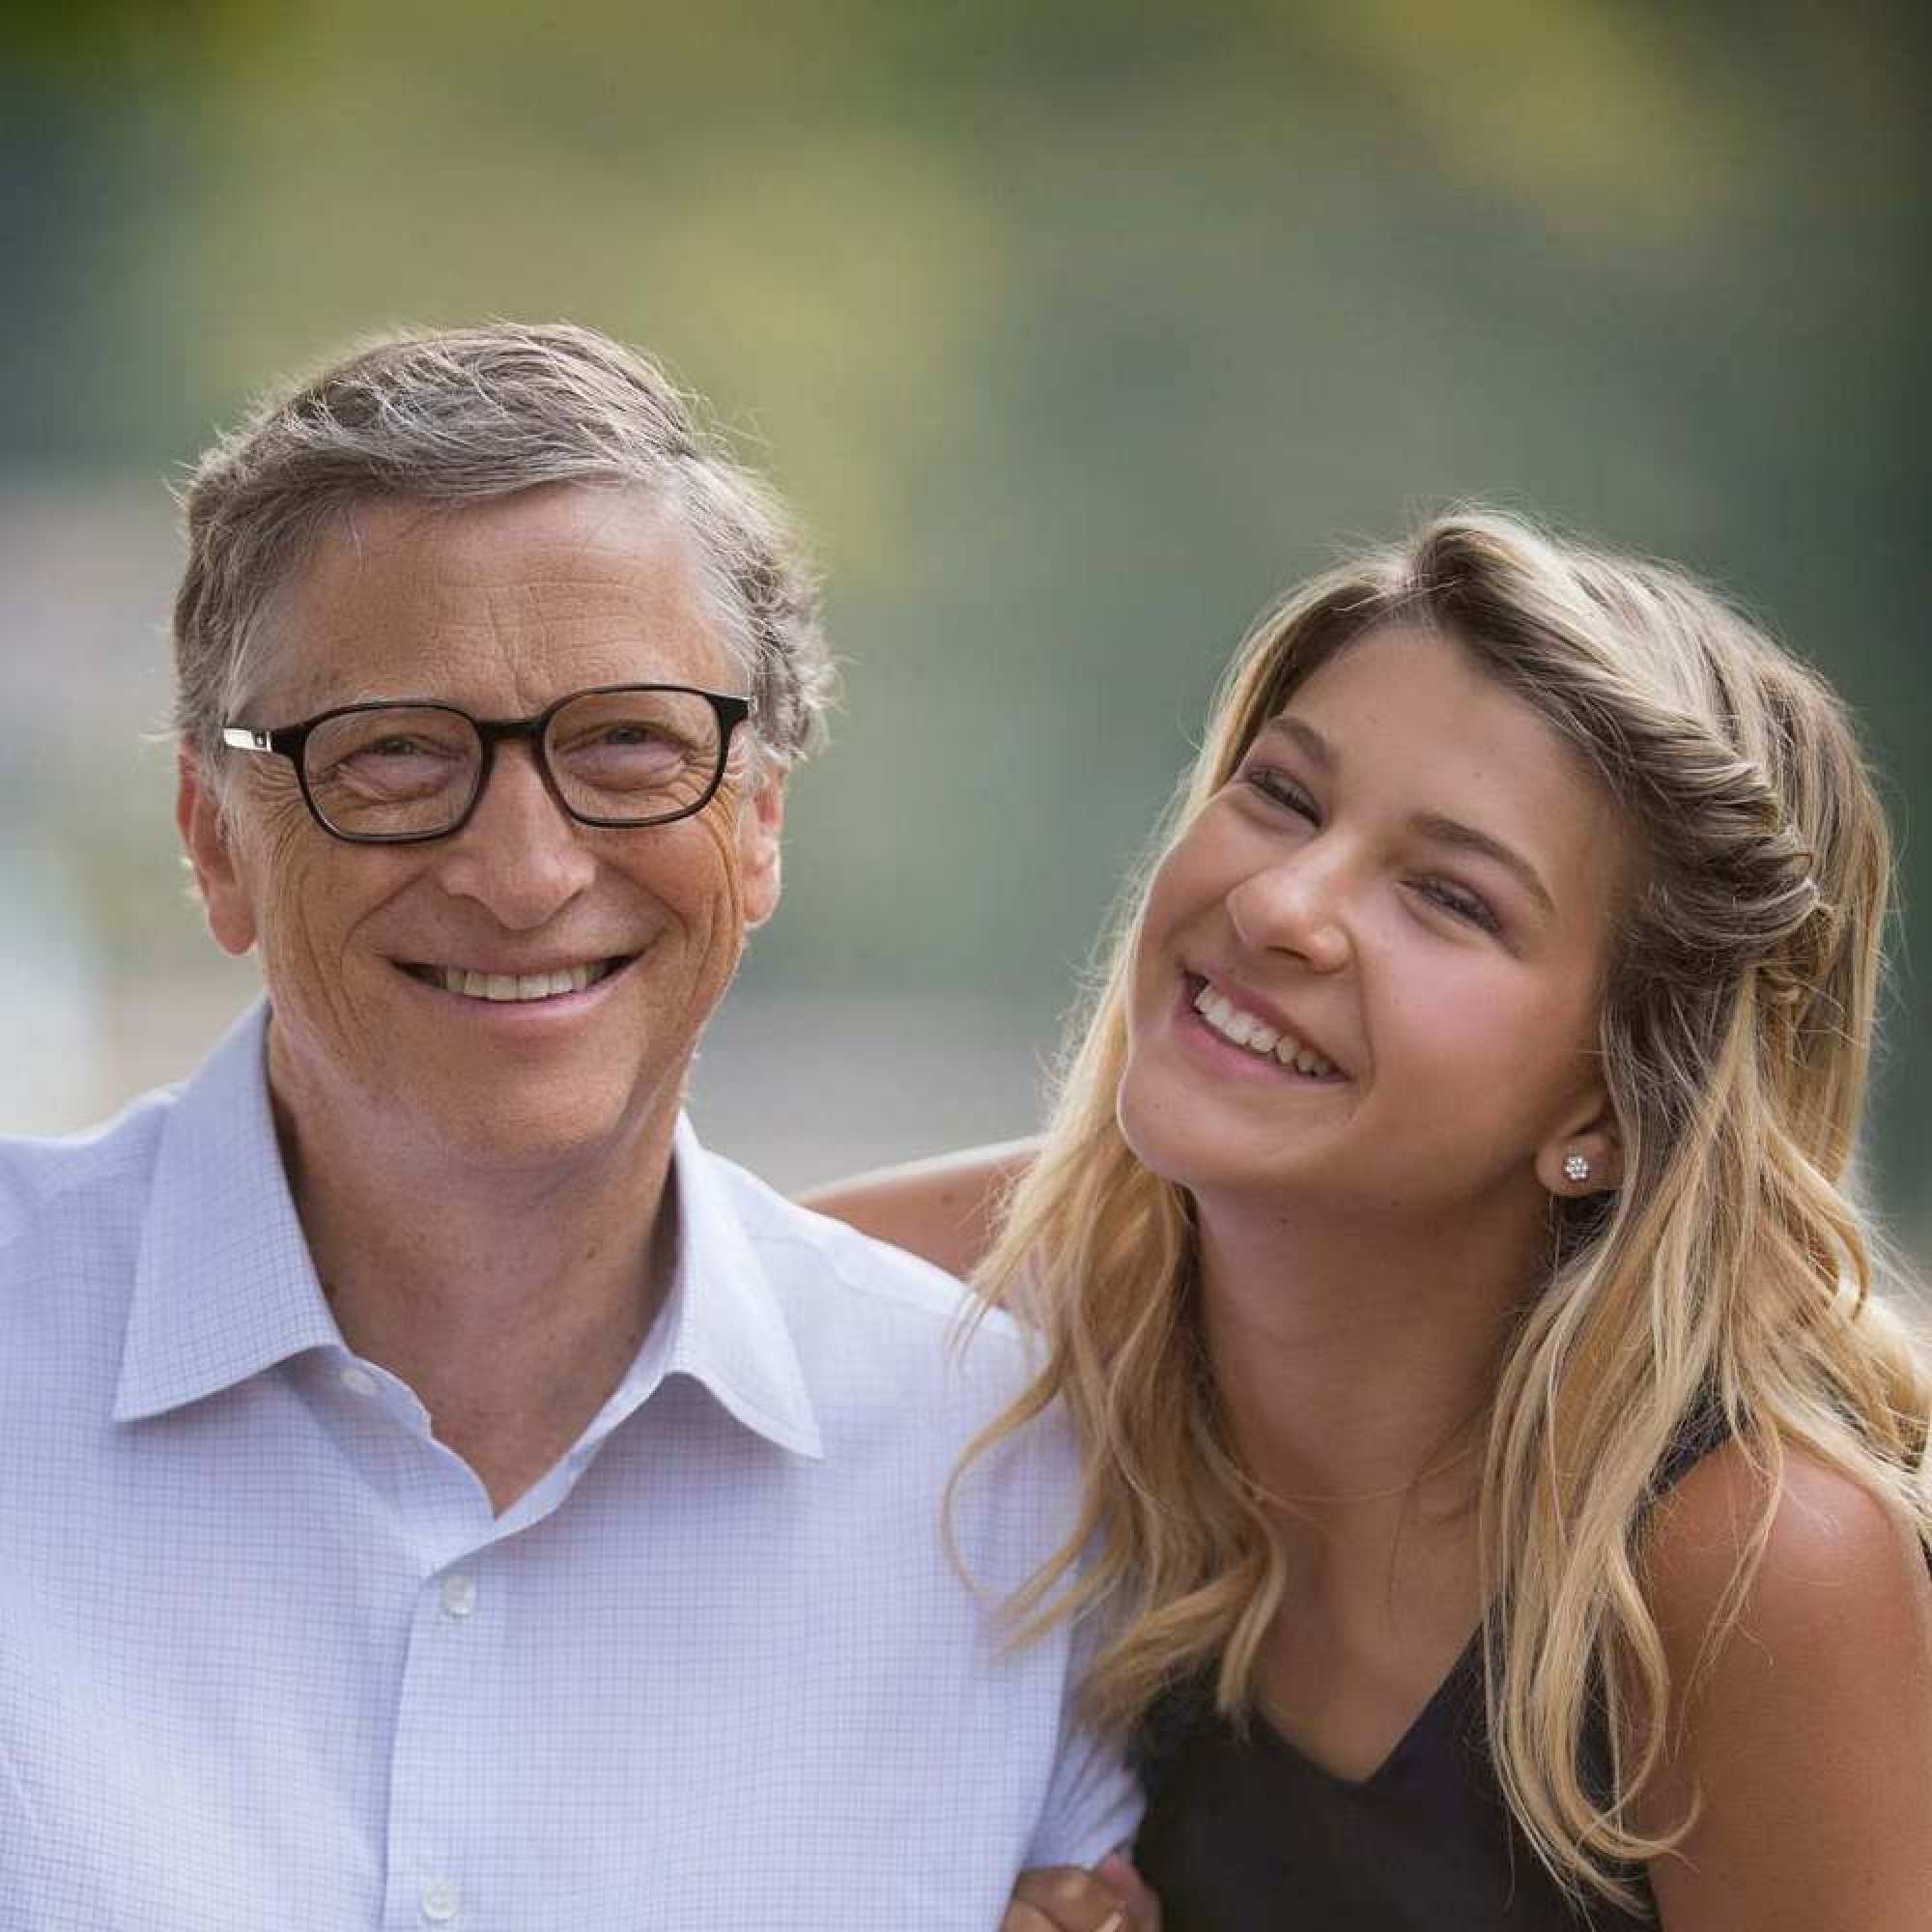 Con gái út của Bill Gates yêu thời trang xa xỉ - Ảnh 3.